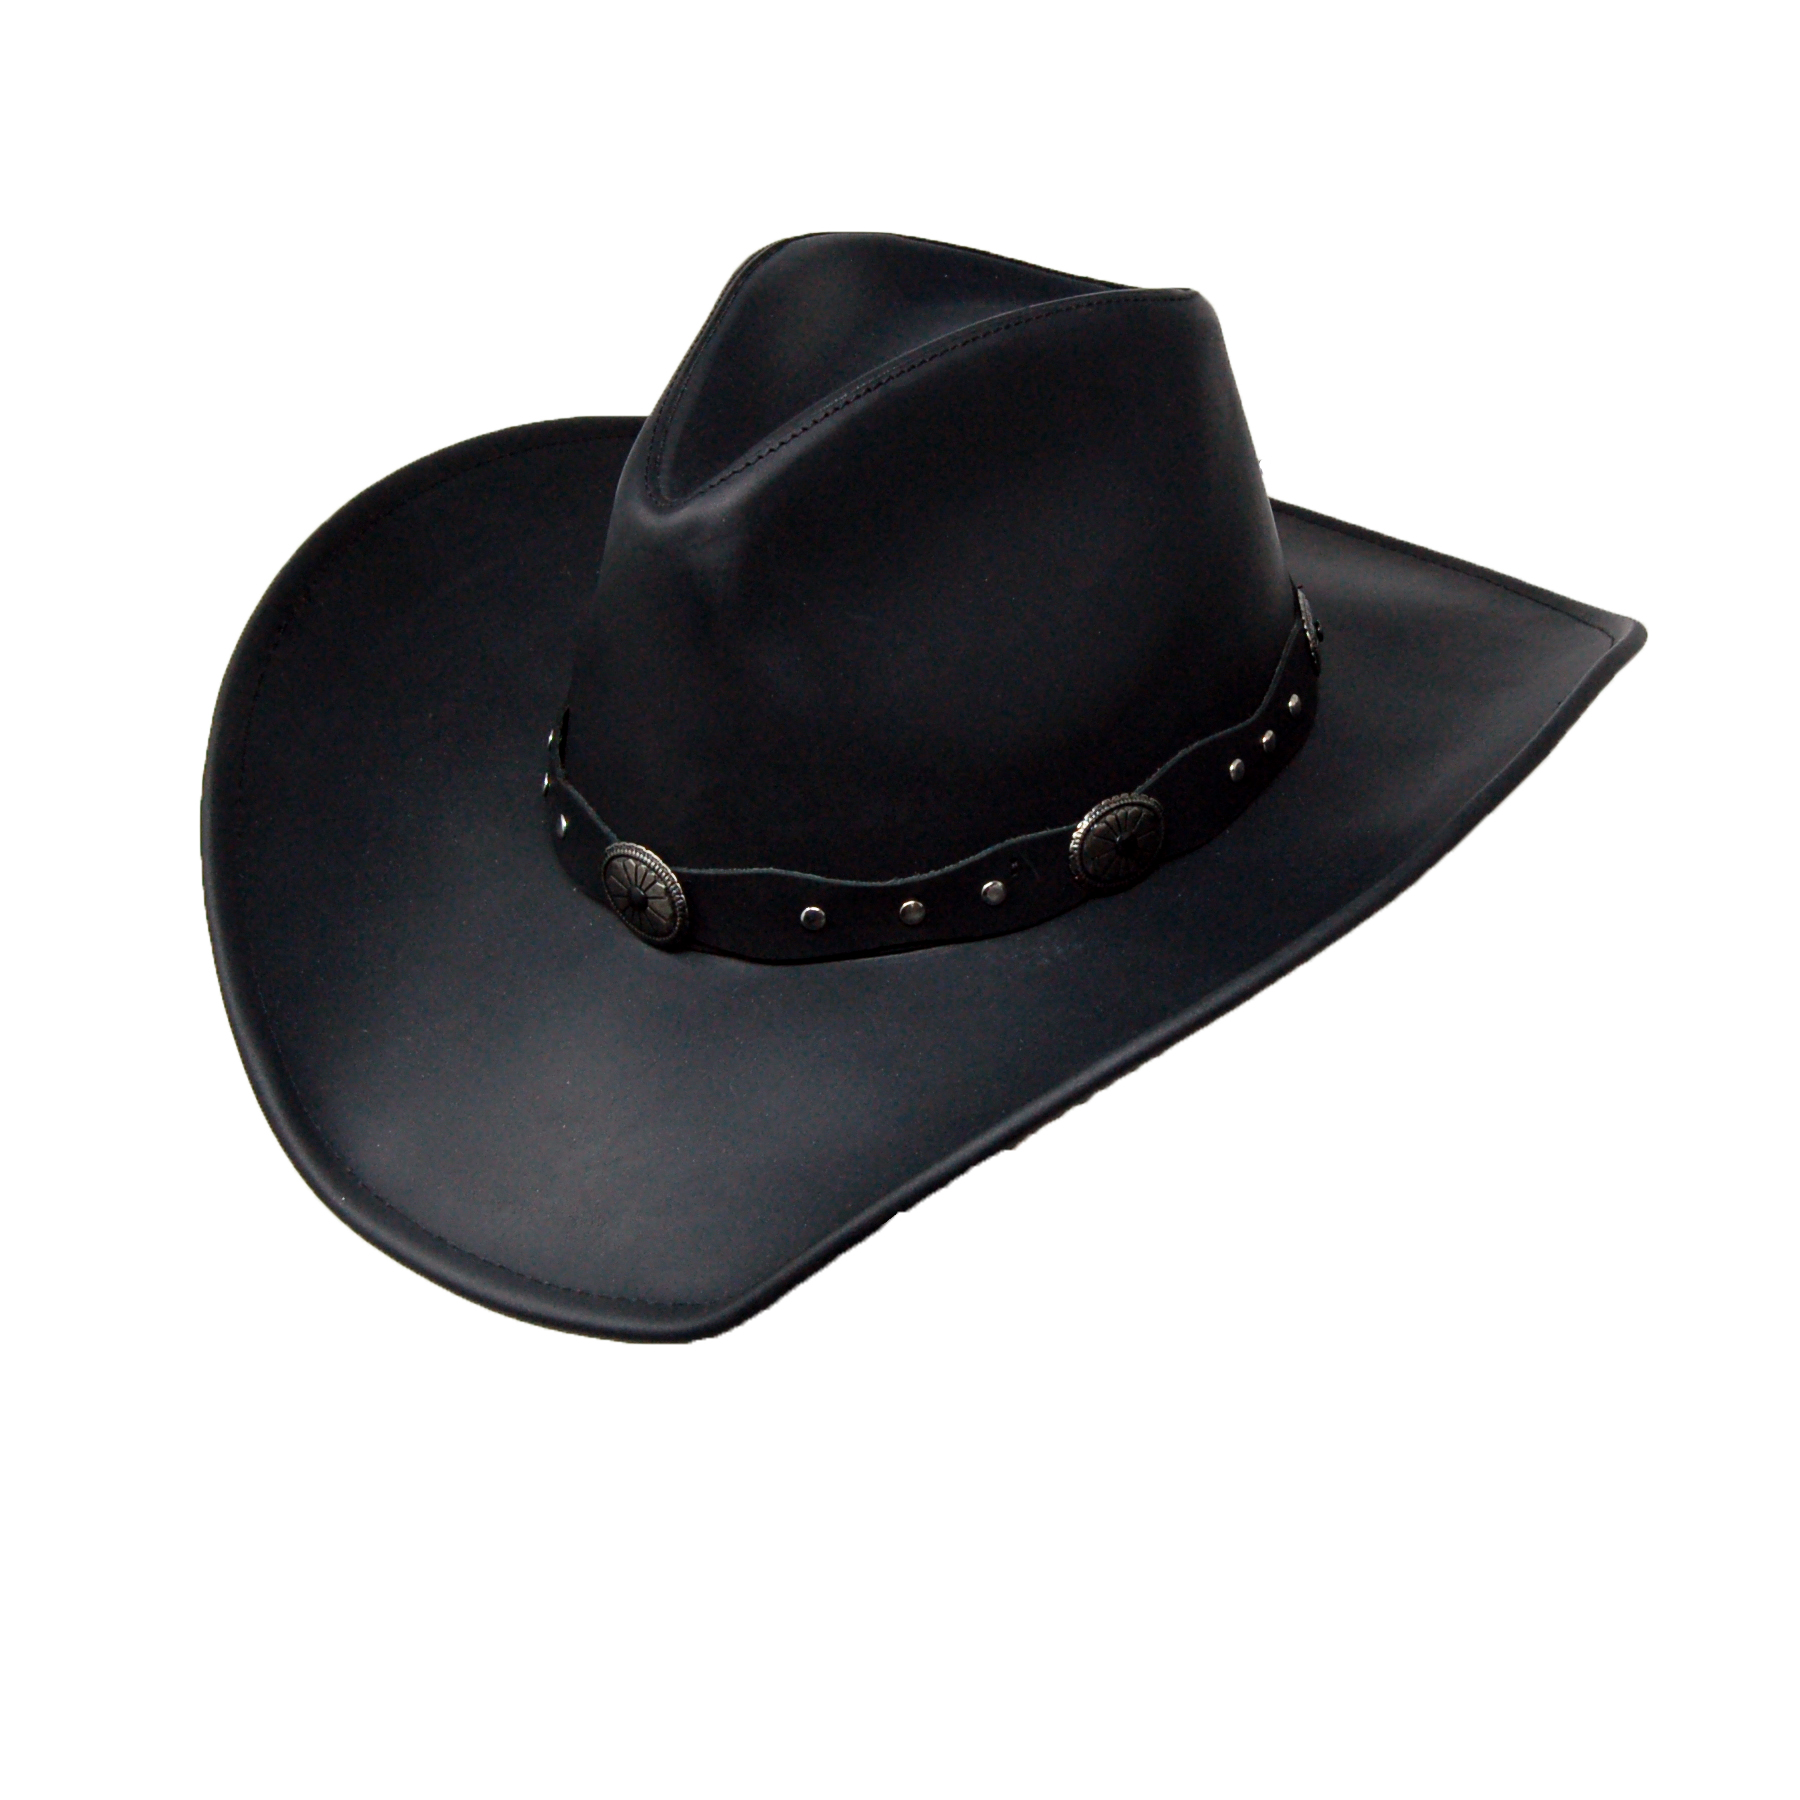 Stetson Cowboy Hat Brown